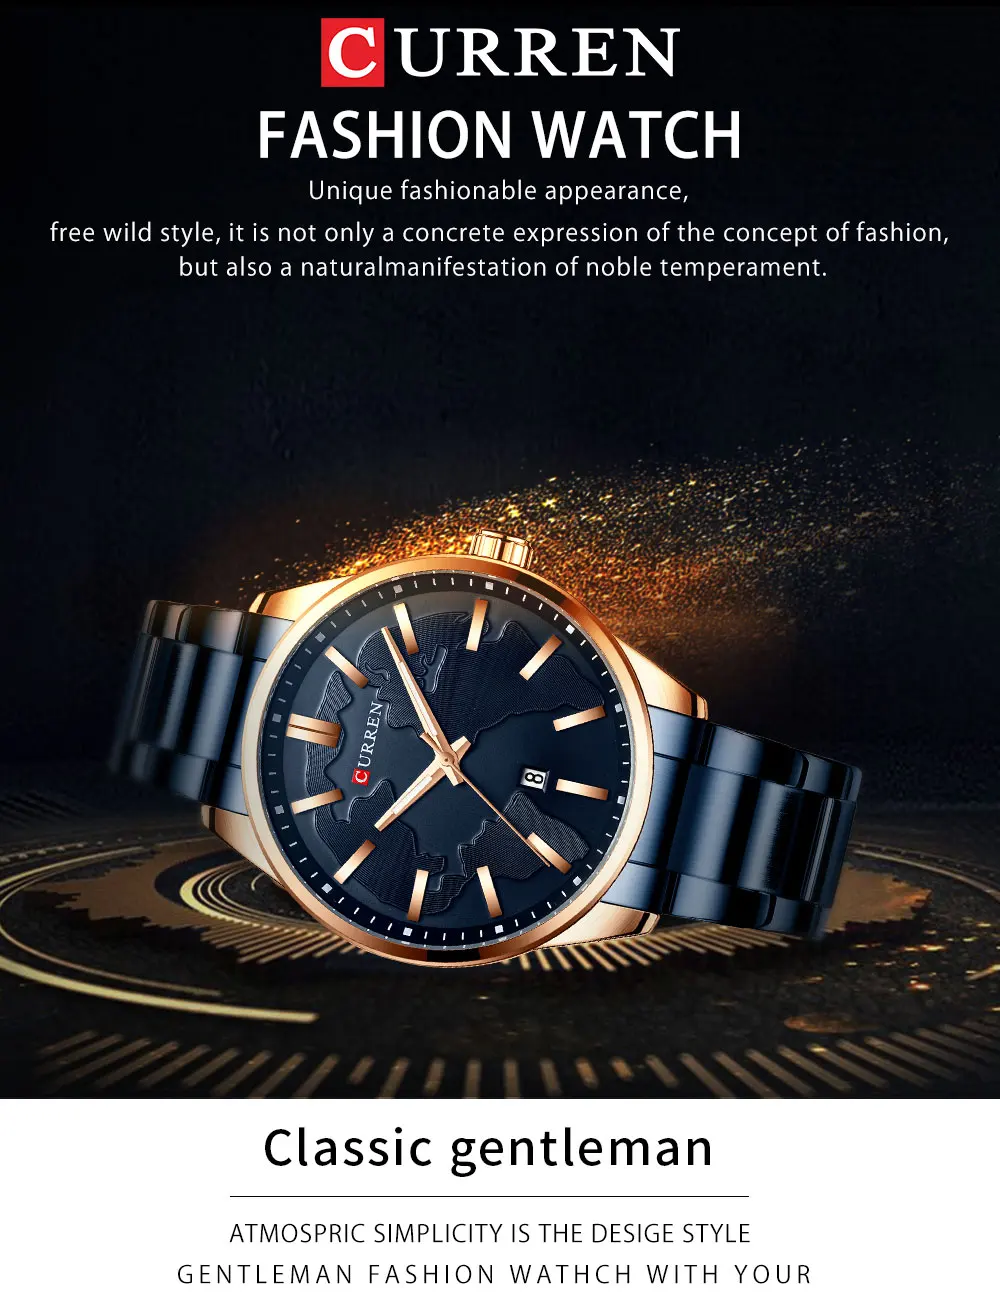 Мужские часы Curren лучший бренд класса люкс кварцевые модные мужские водонепроницаемые часы спортивные мужские наручные часы Relogio Masculino